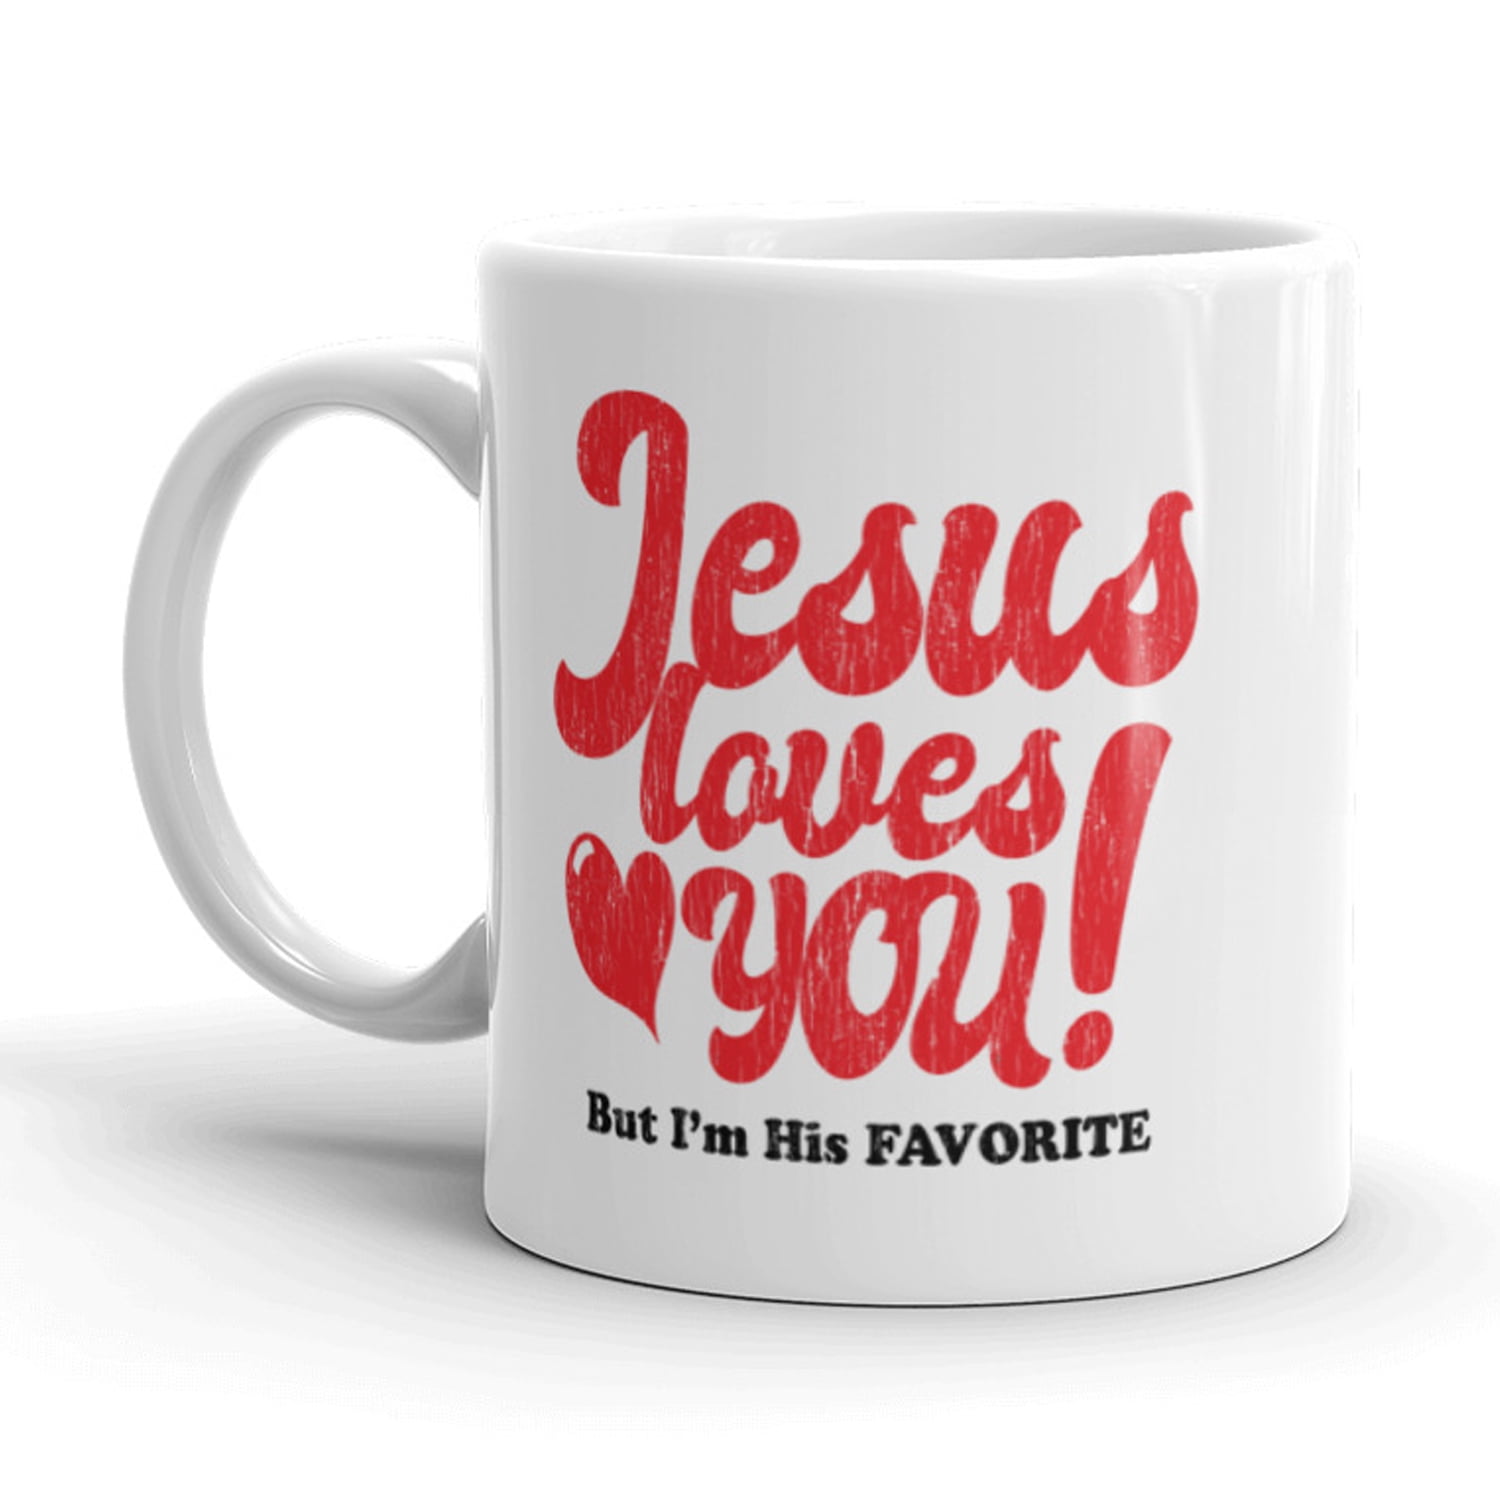 Thank You Jesus Design 11oz Ceramic Coffee Mug